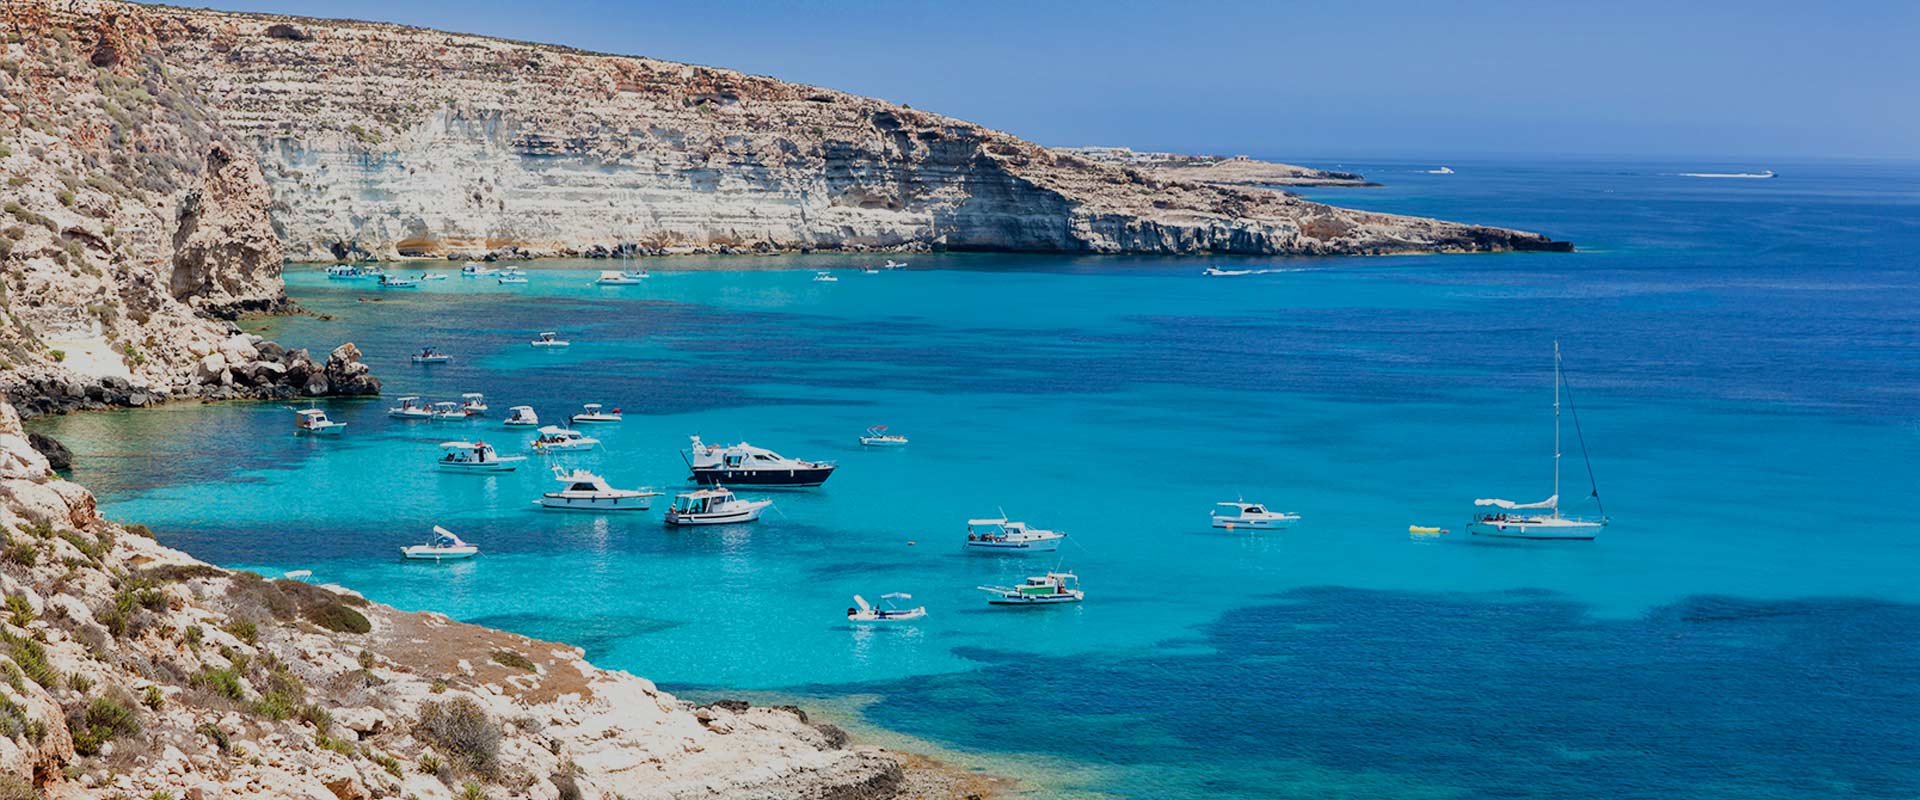 Isole Pelagie, Lampedusa, viaggio in sicilia